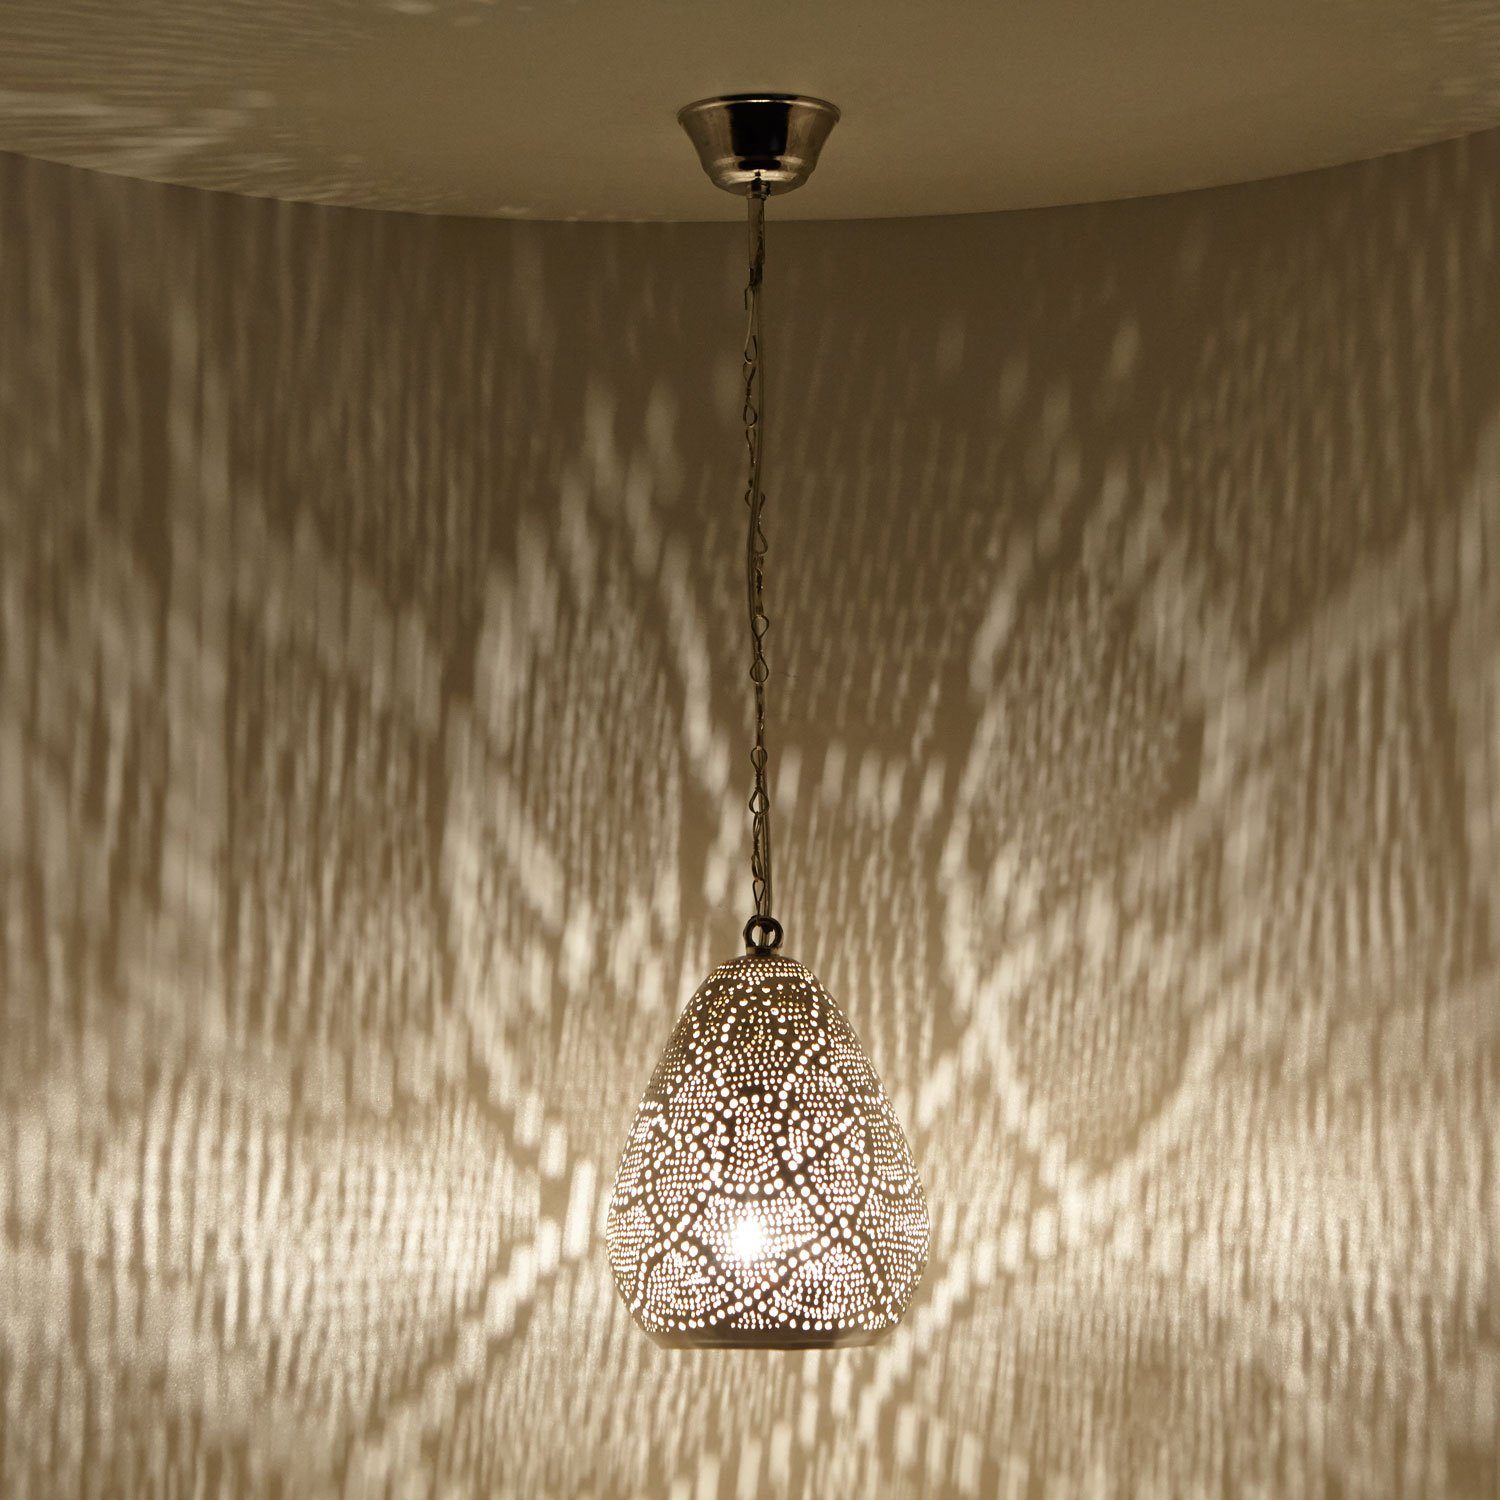 Casa Moro Hängeleuchte Orientalische Lampe Saham Silber echt versilberte  Messing-Lampe mit Fassung Kette & Baldachin, Kunsthandwerk aus Marokko,  Prachtvolle Deckenleuchte wie aus 1001 Nacht, Handgefertigt, Kunsthandwerk